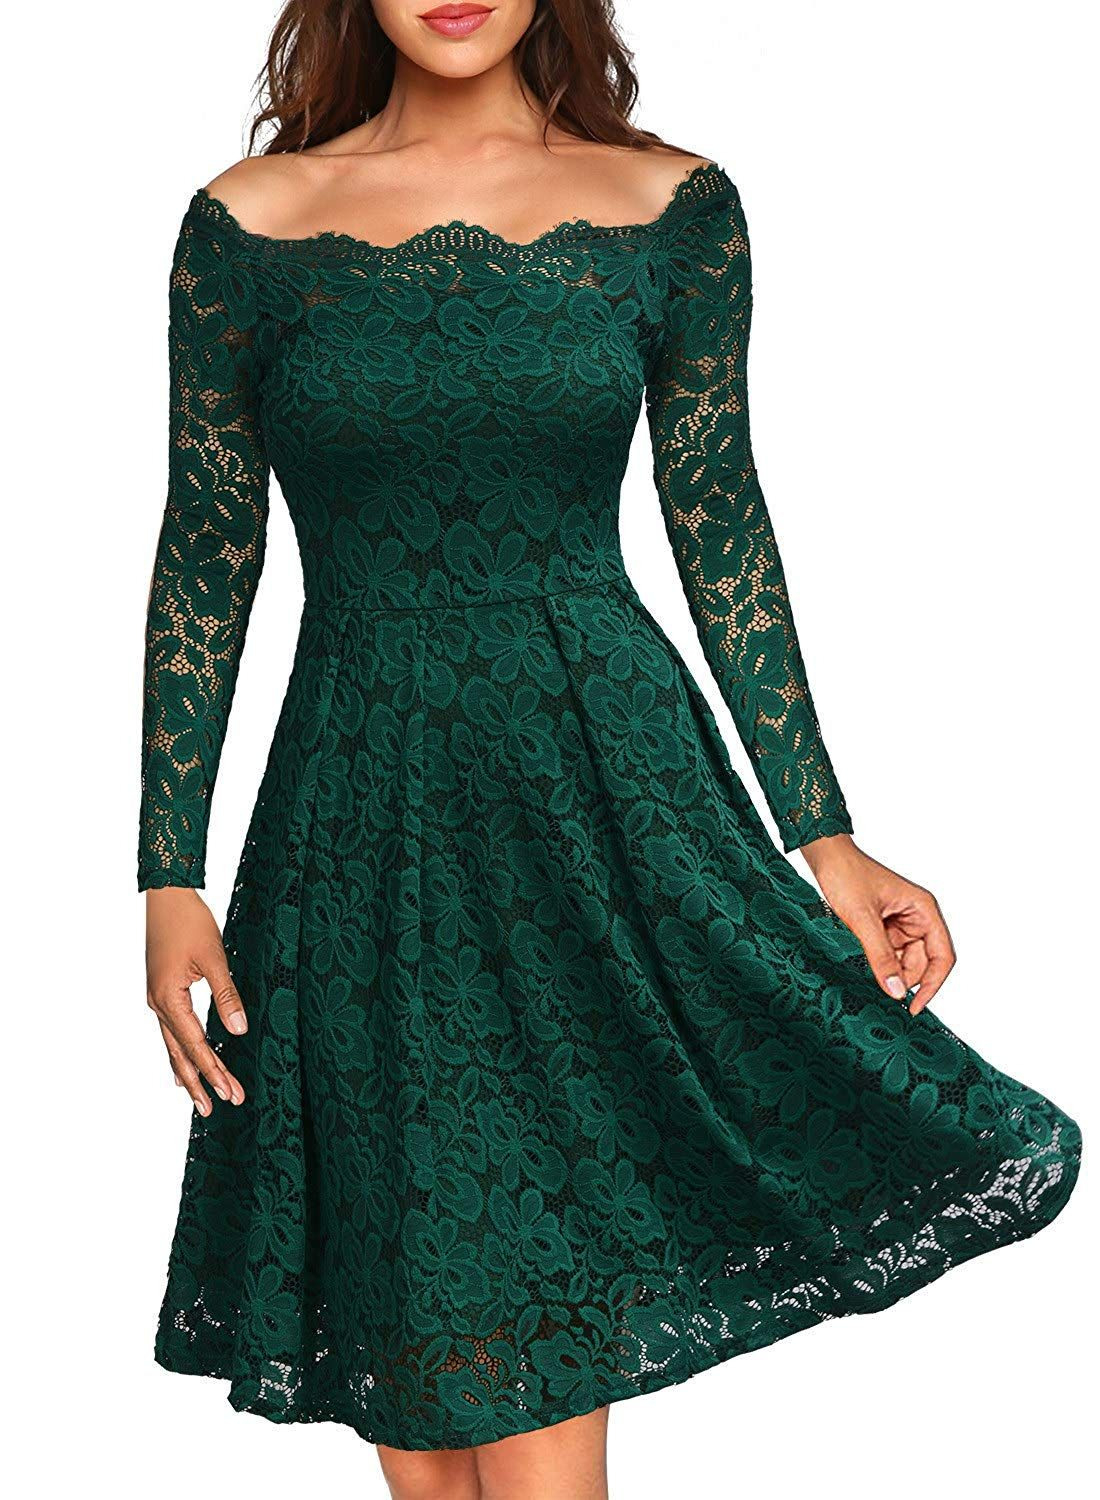 15 Top Grünes Kleid Spitze für 2019 Wunderbar Grünes Kleid Spitze Spezialgebiet